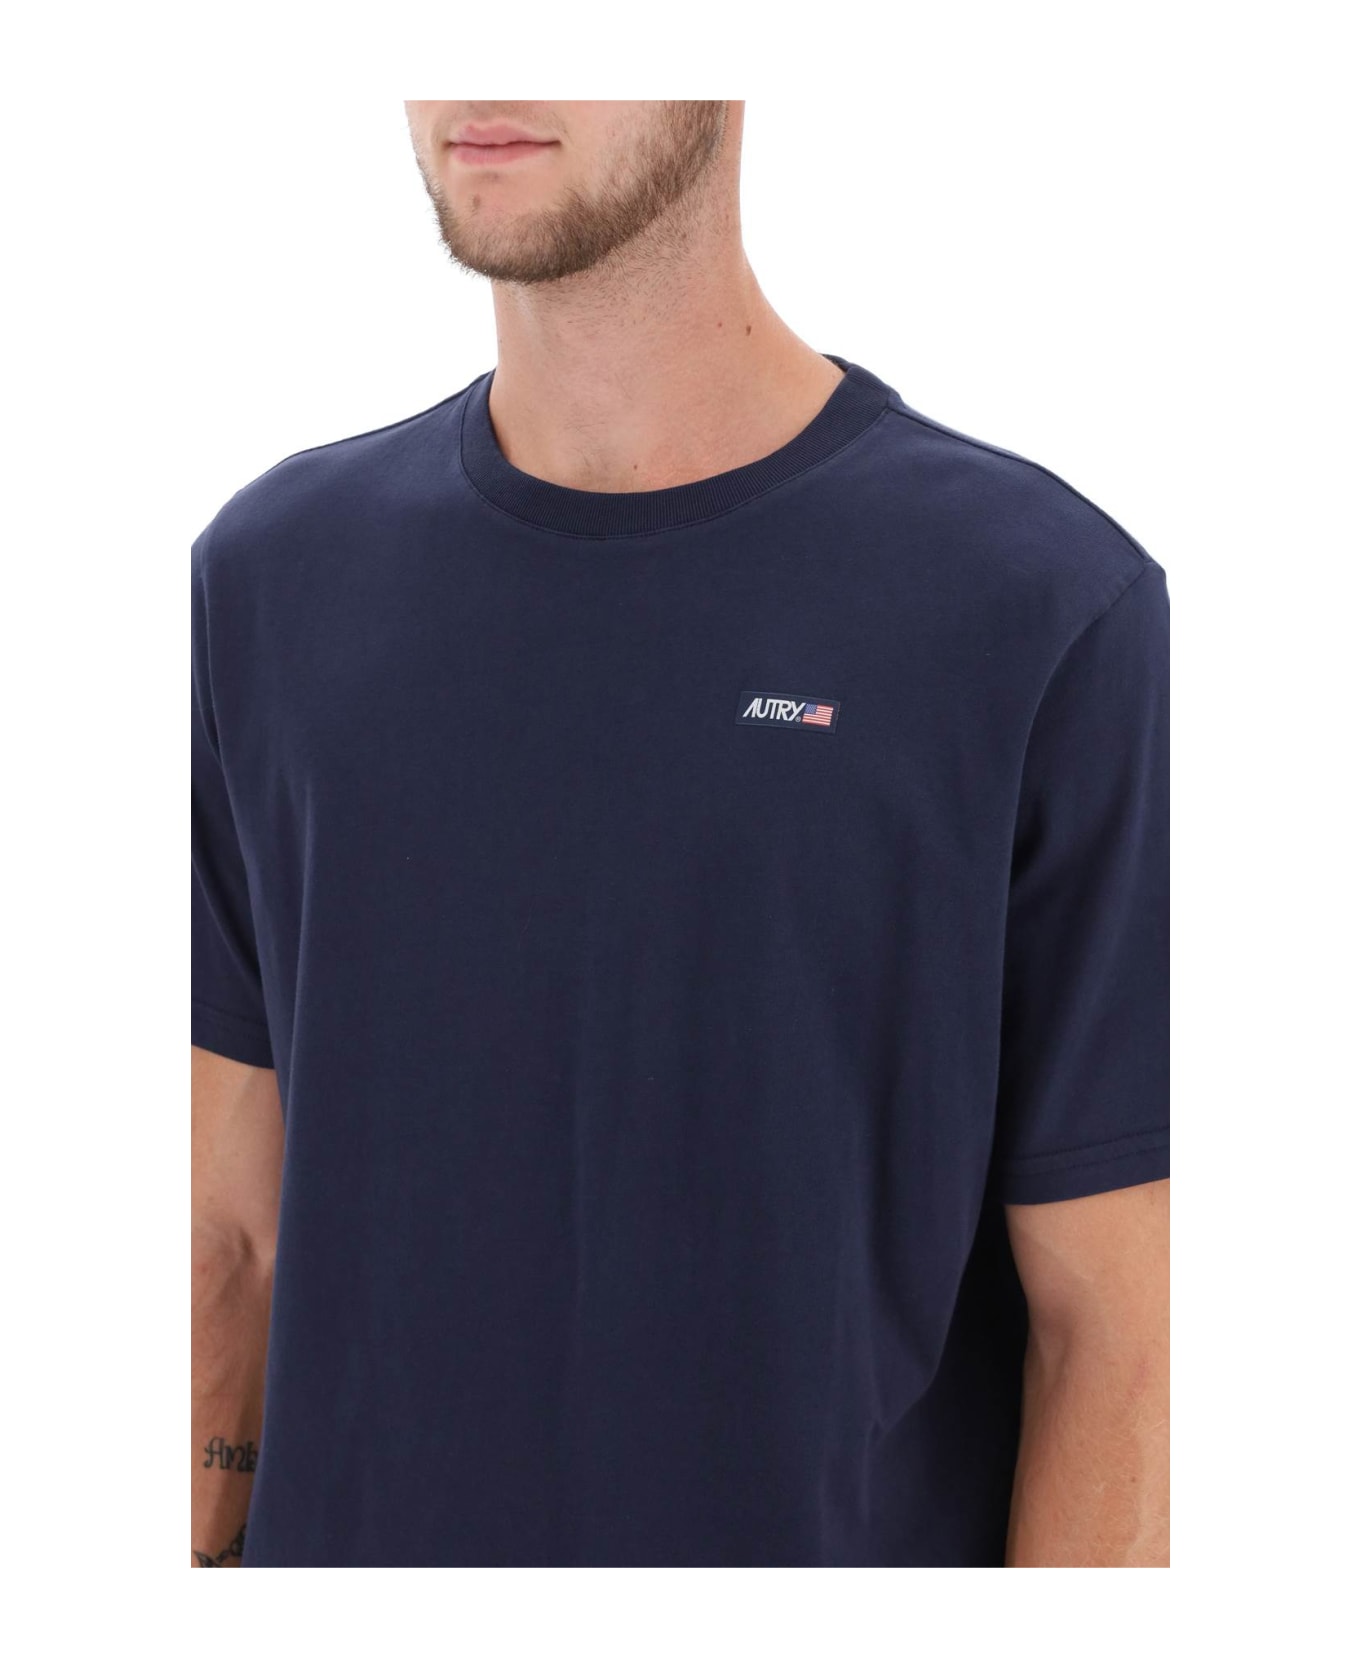 Autry Cotton Crew-neck T-shirt - Blue